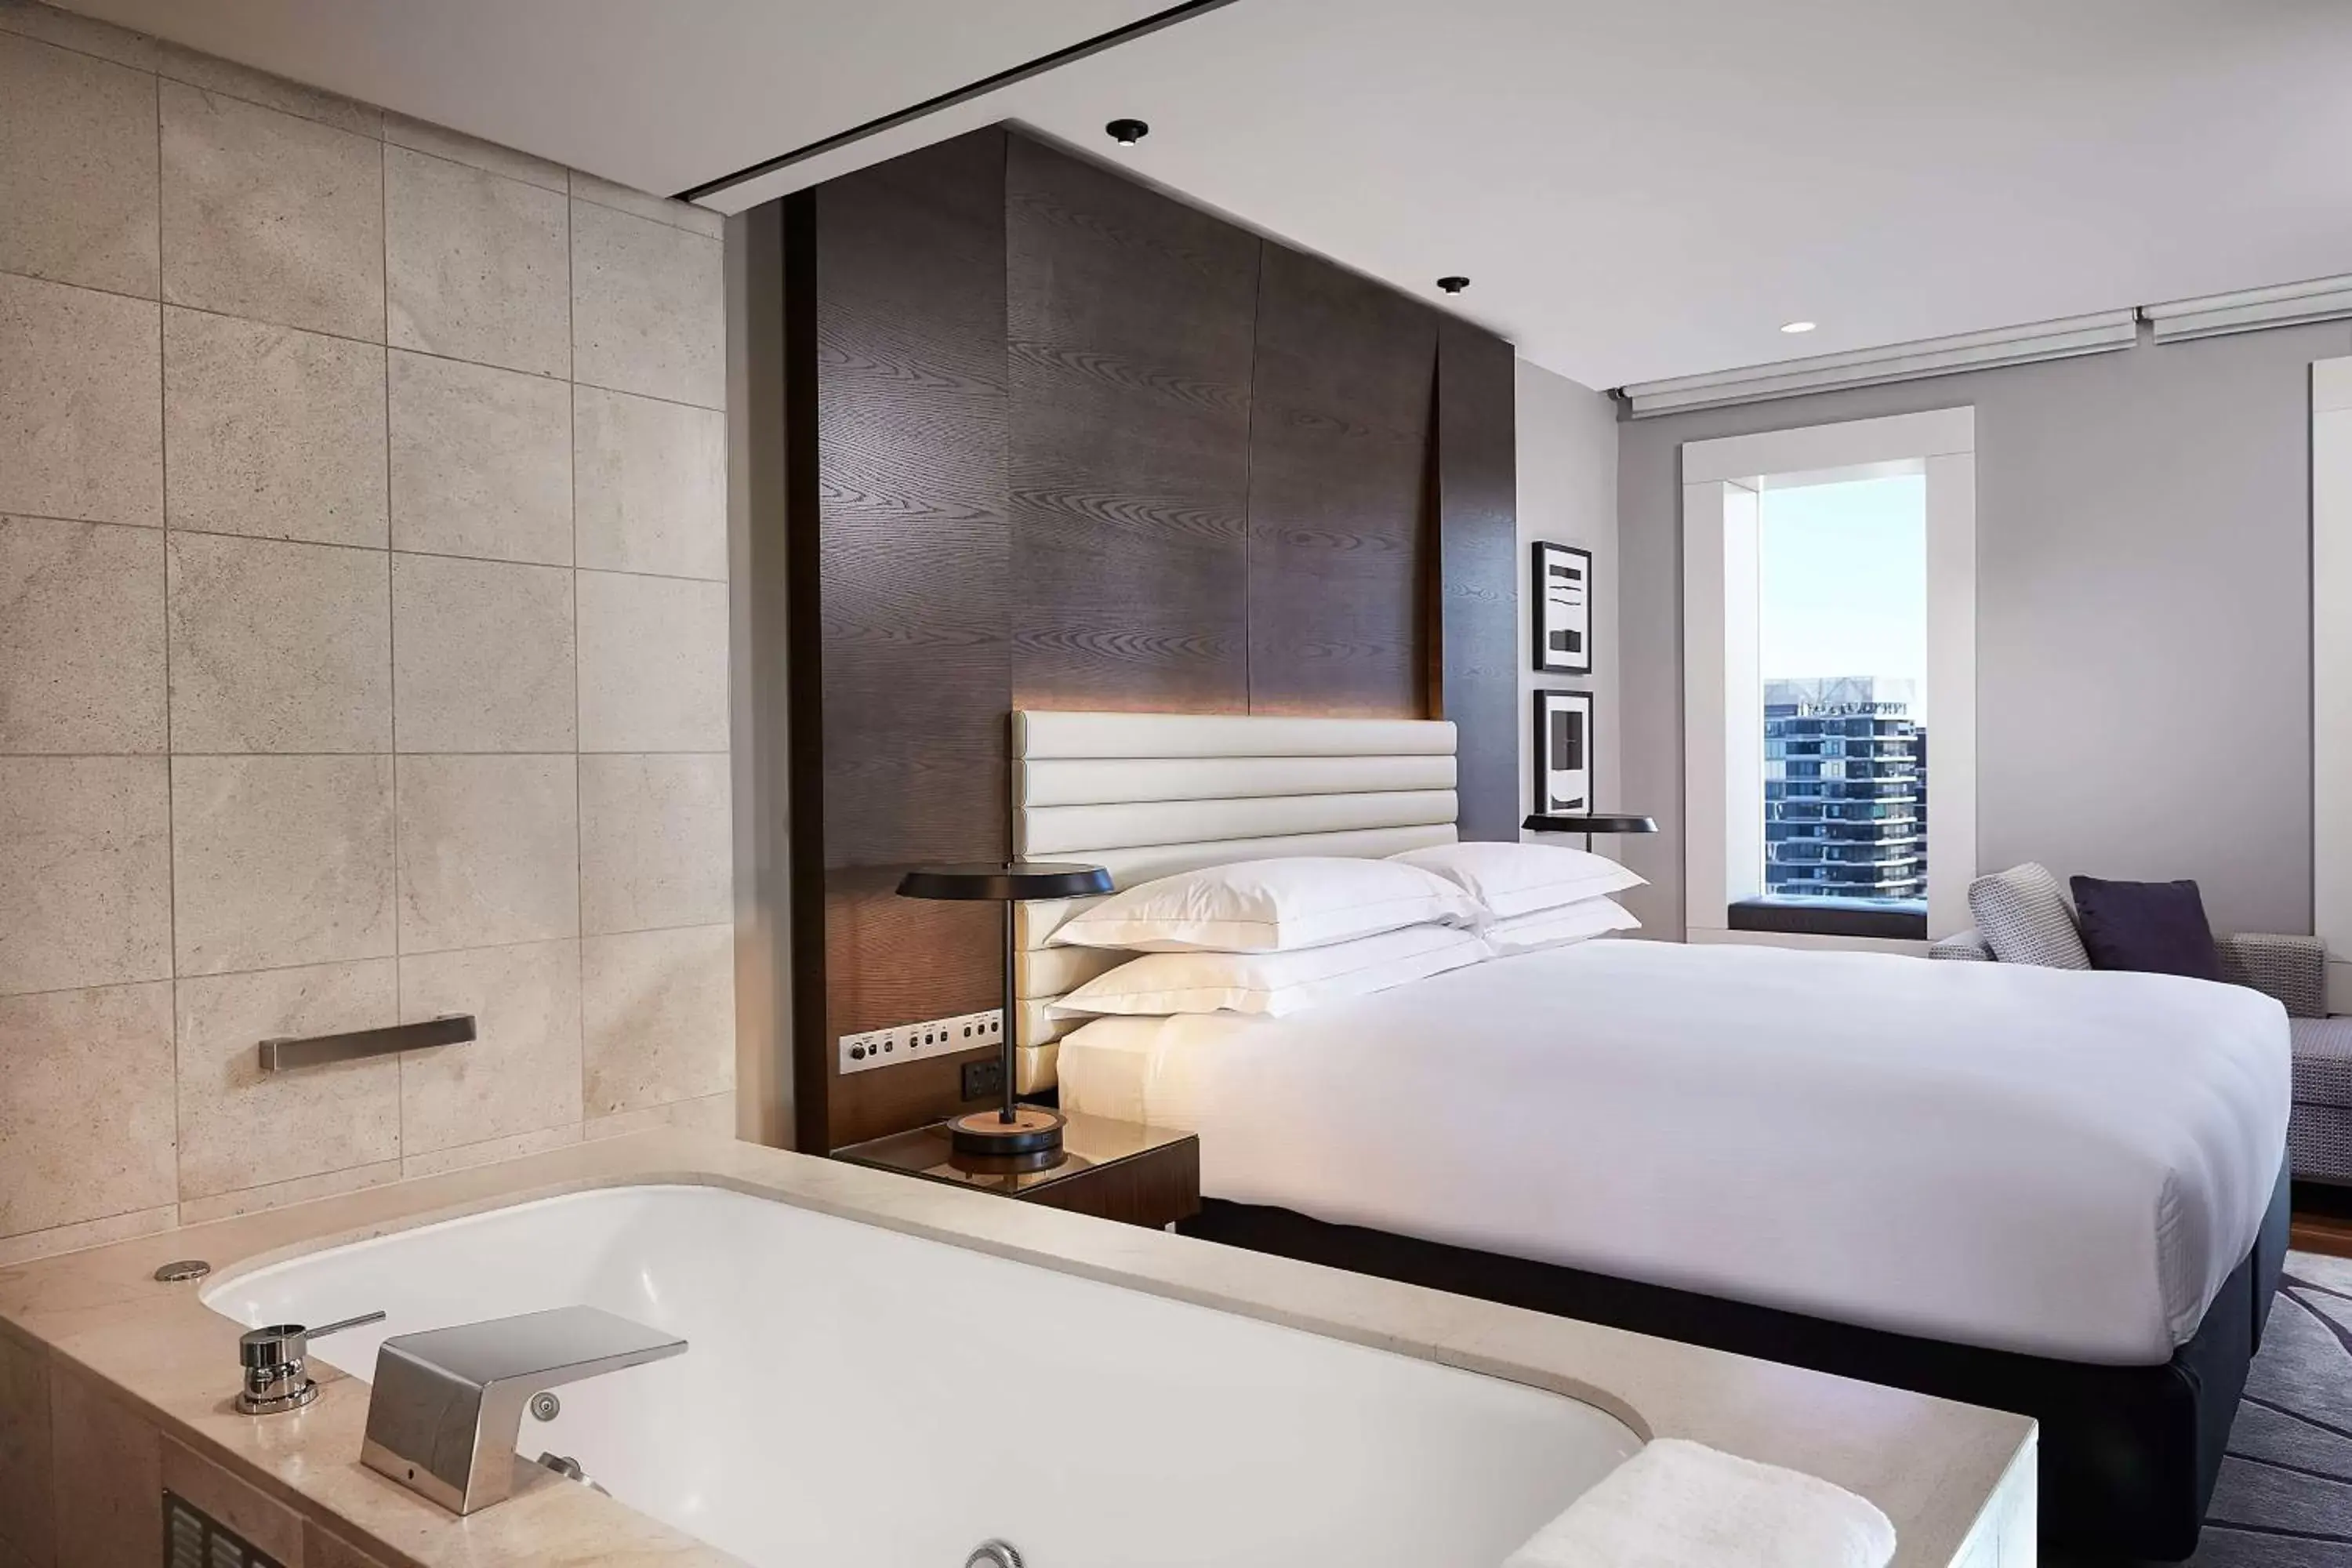 Bed, Bathroom in Hilton Sydney